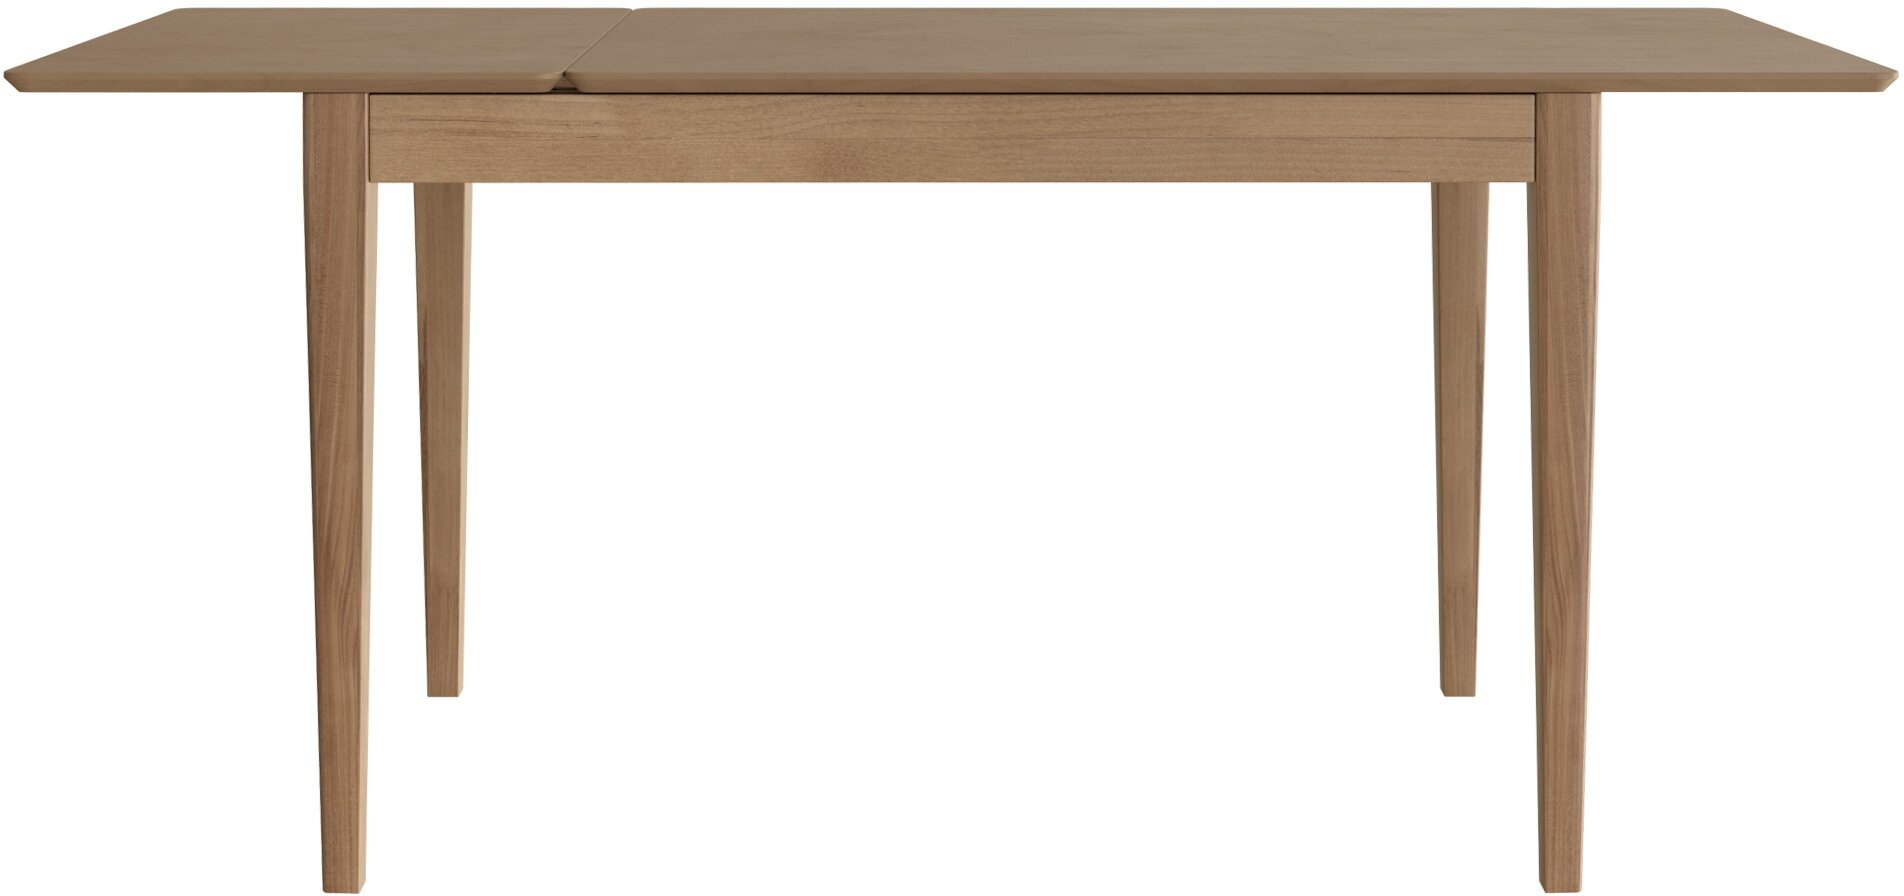 Стол обеденный / кухонный Антила classic (119-169) см прямоугольный, раздвижной, деревянный - Дуб золотой - фотография № 7